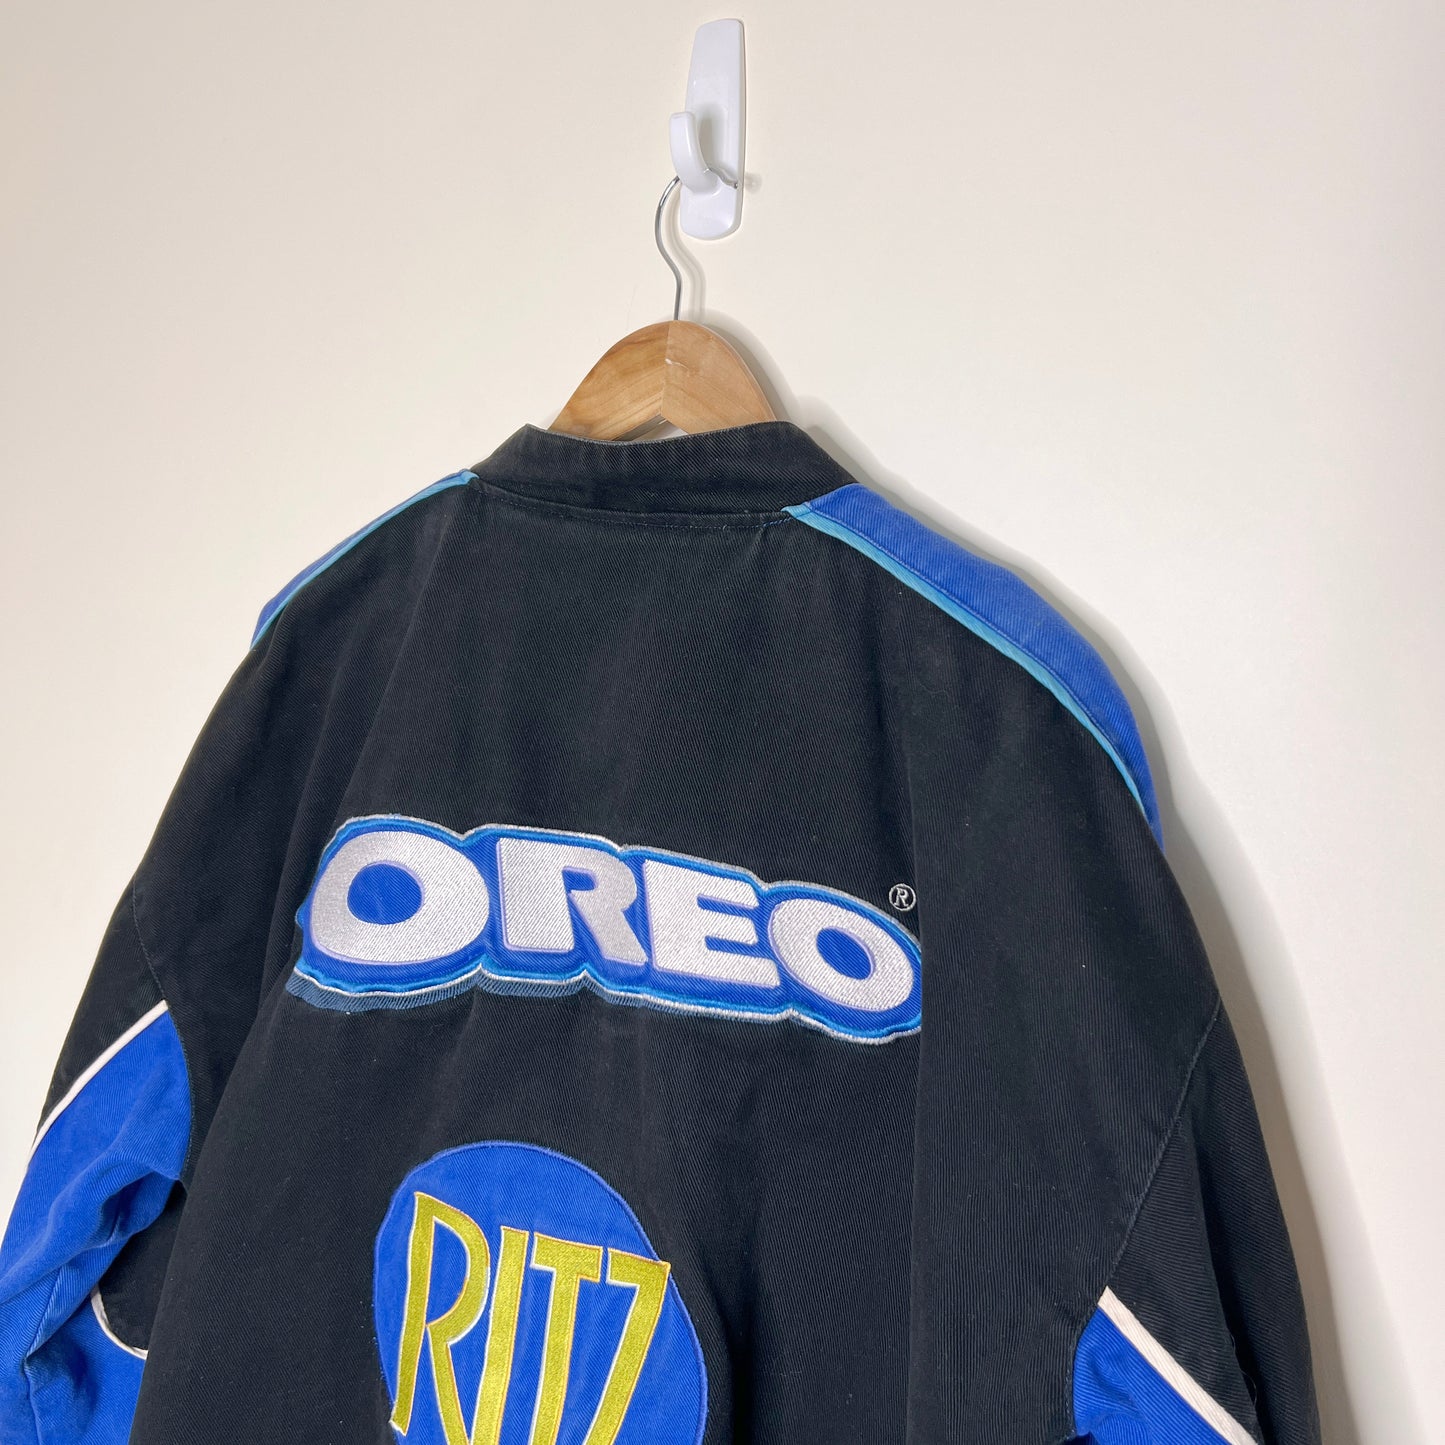 Oreo Ritz Nascar Jacket | Jeff Hamilton